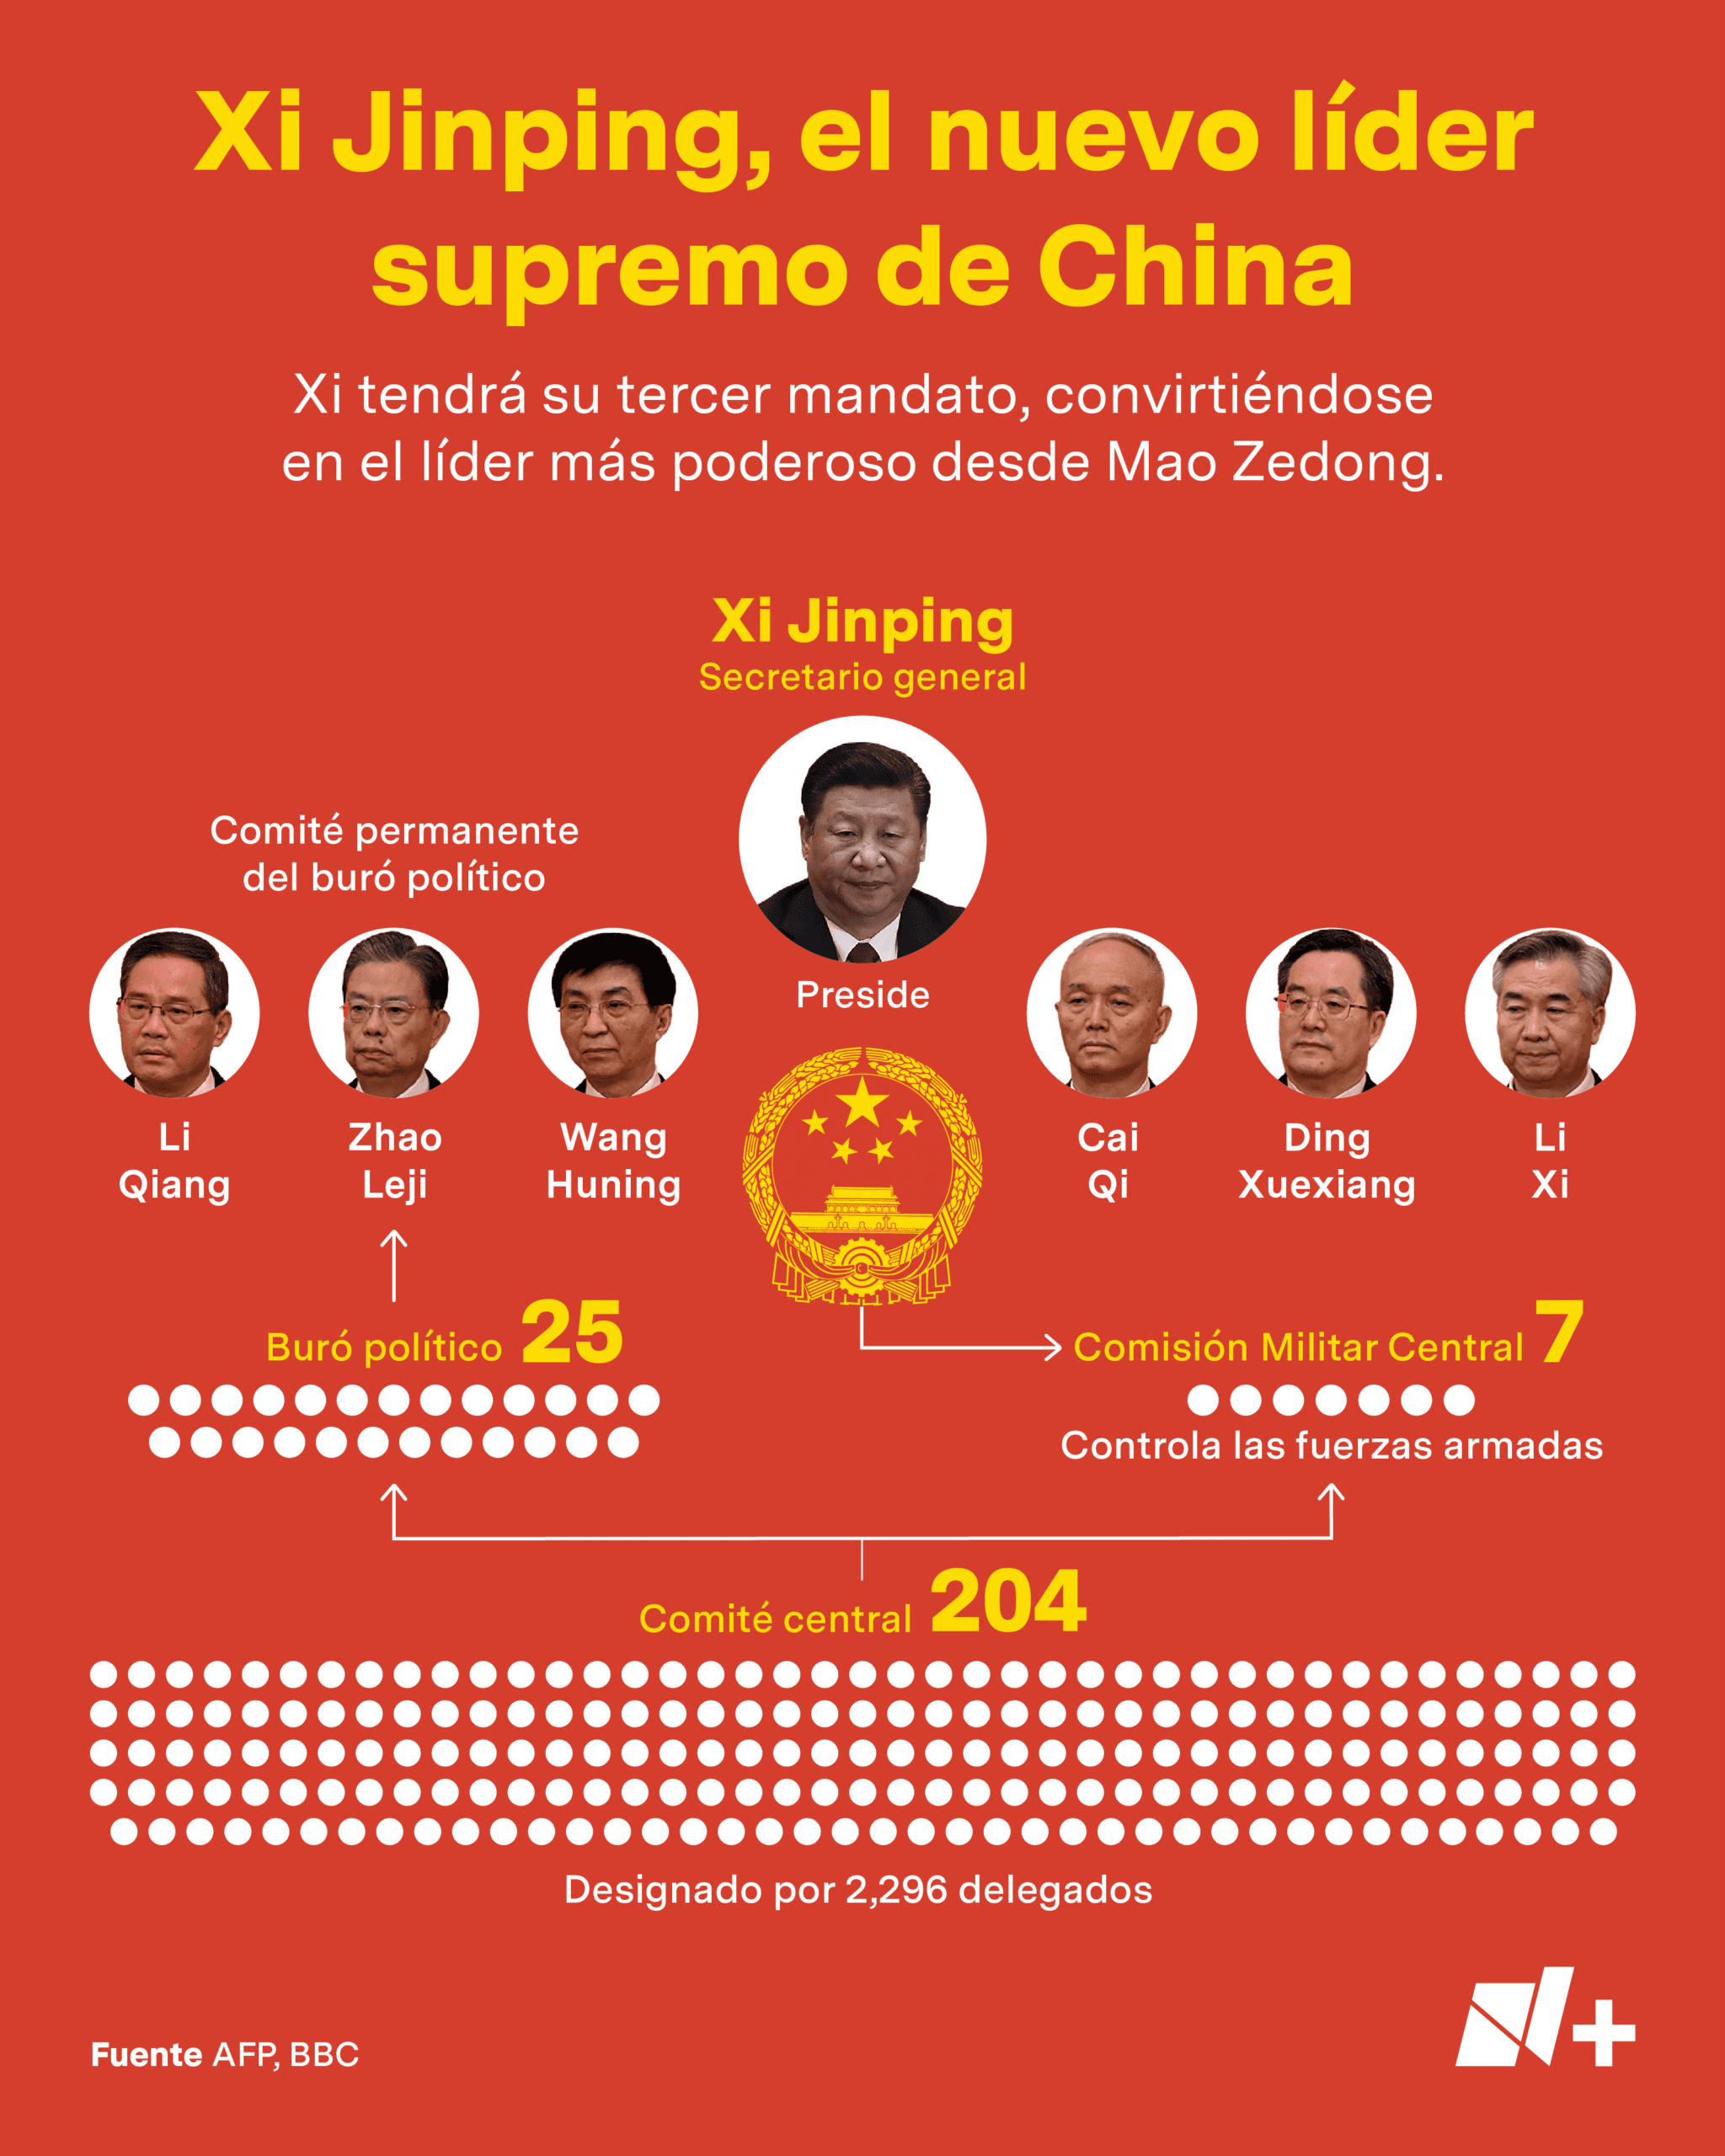 ¿Qué está pasando en China con el poder de Xi Jinping?